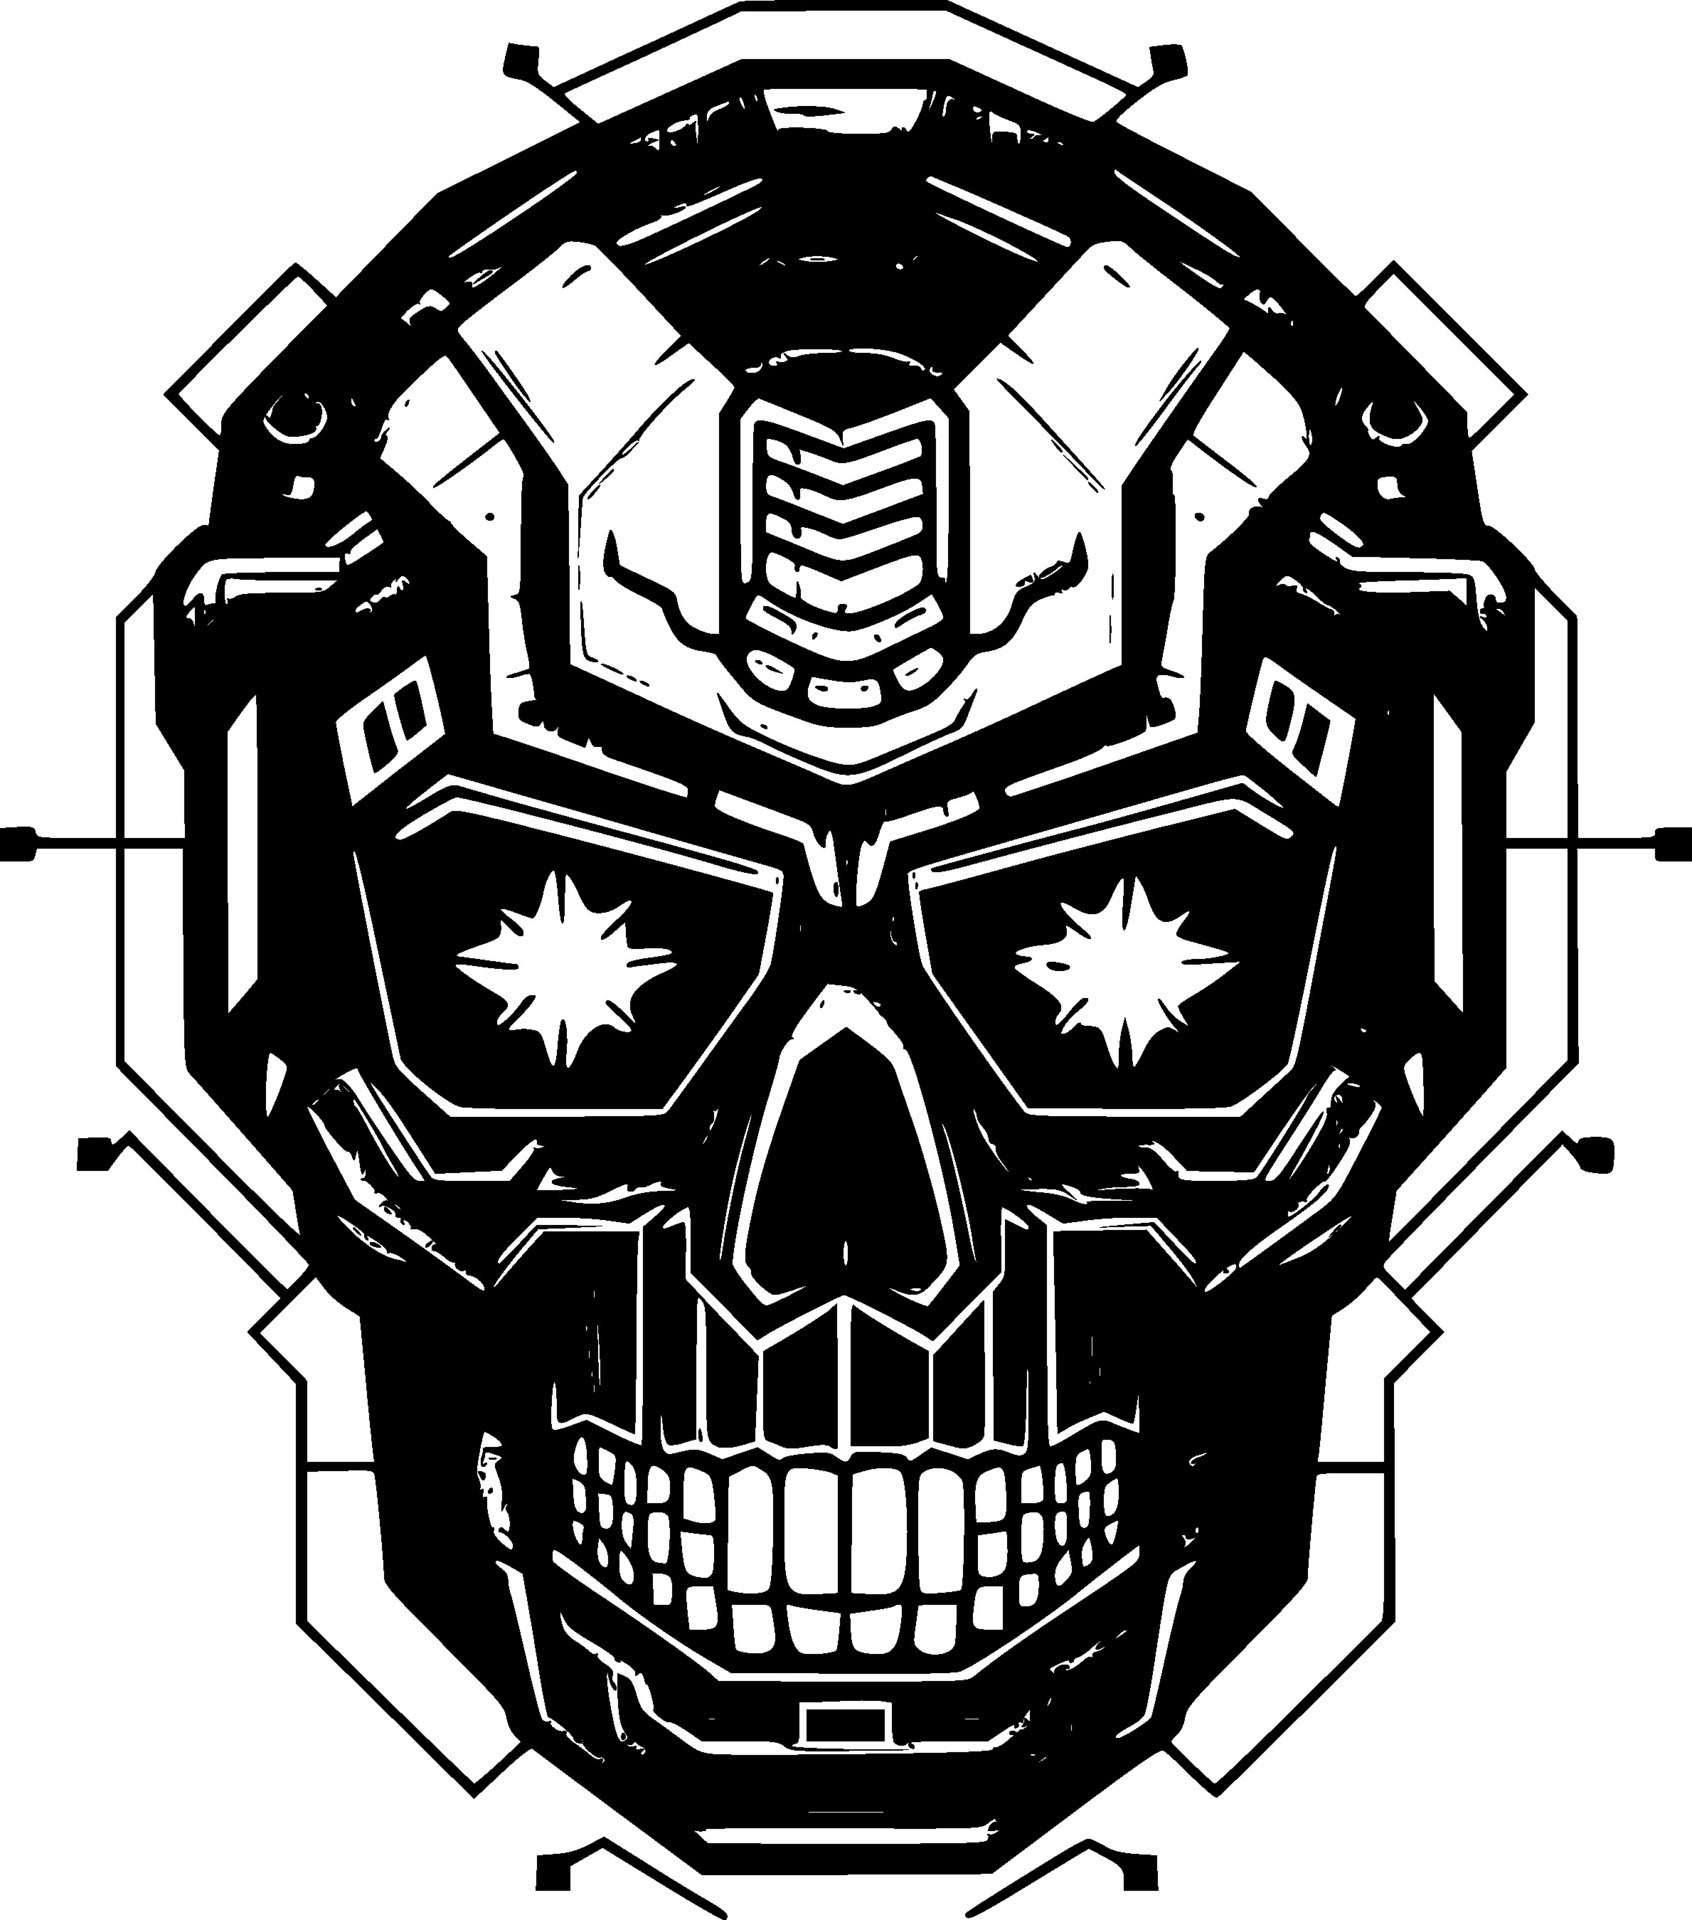 Skull, Black and White Vector illustration 27209385 Vector Art at Vecteezy